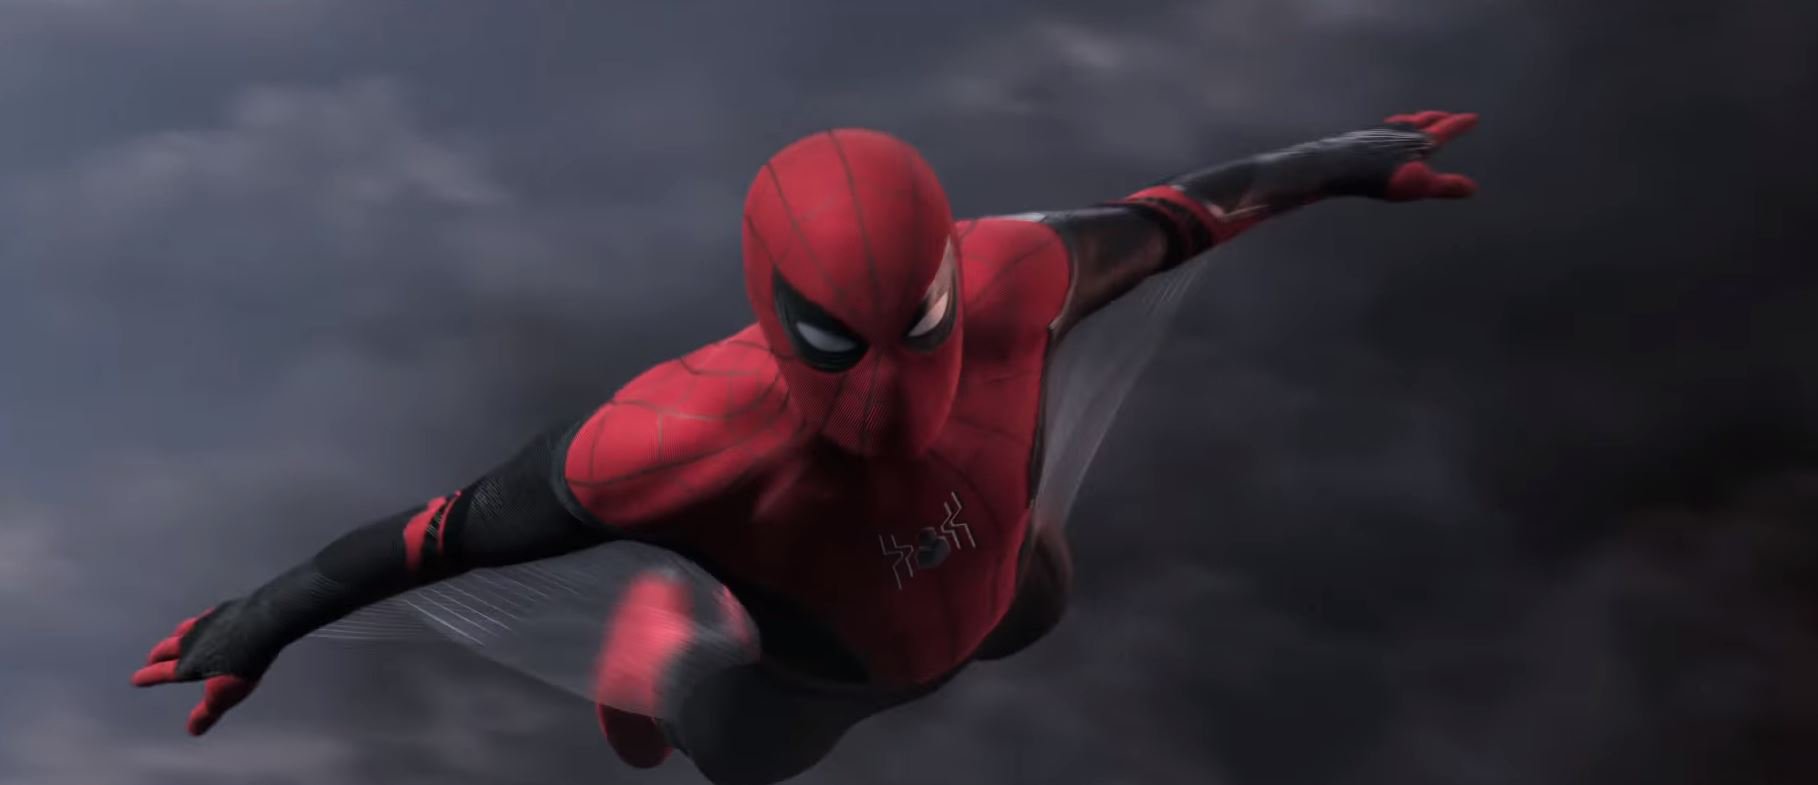 'Spider-Man: Lejos de casa' - Trailer español (HD)Trailers ...